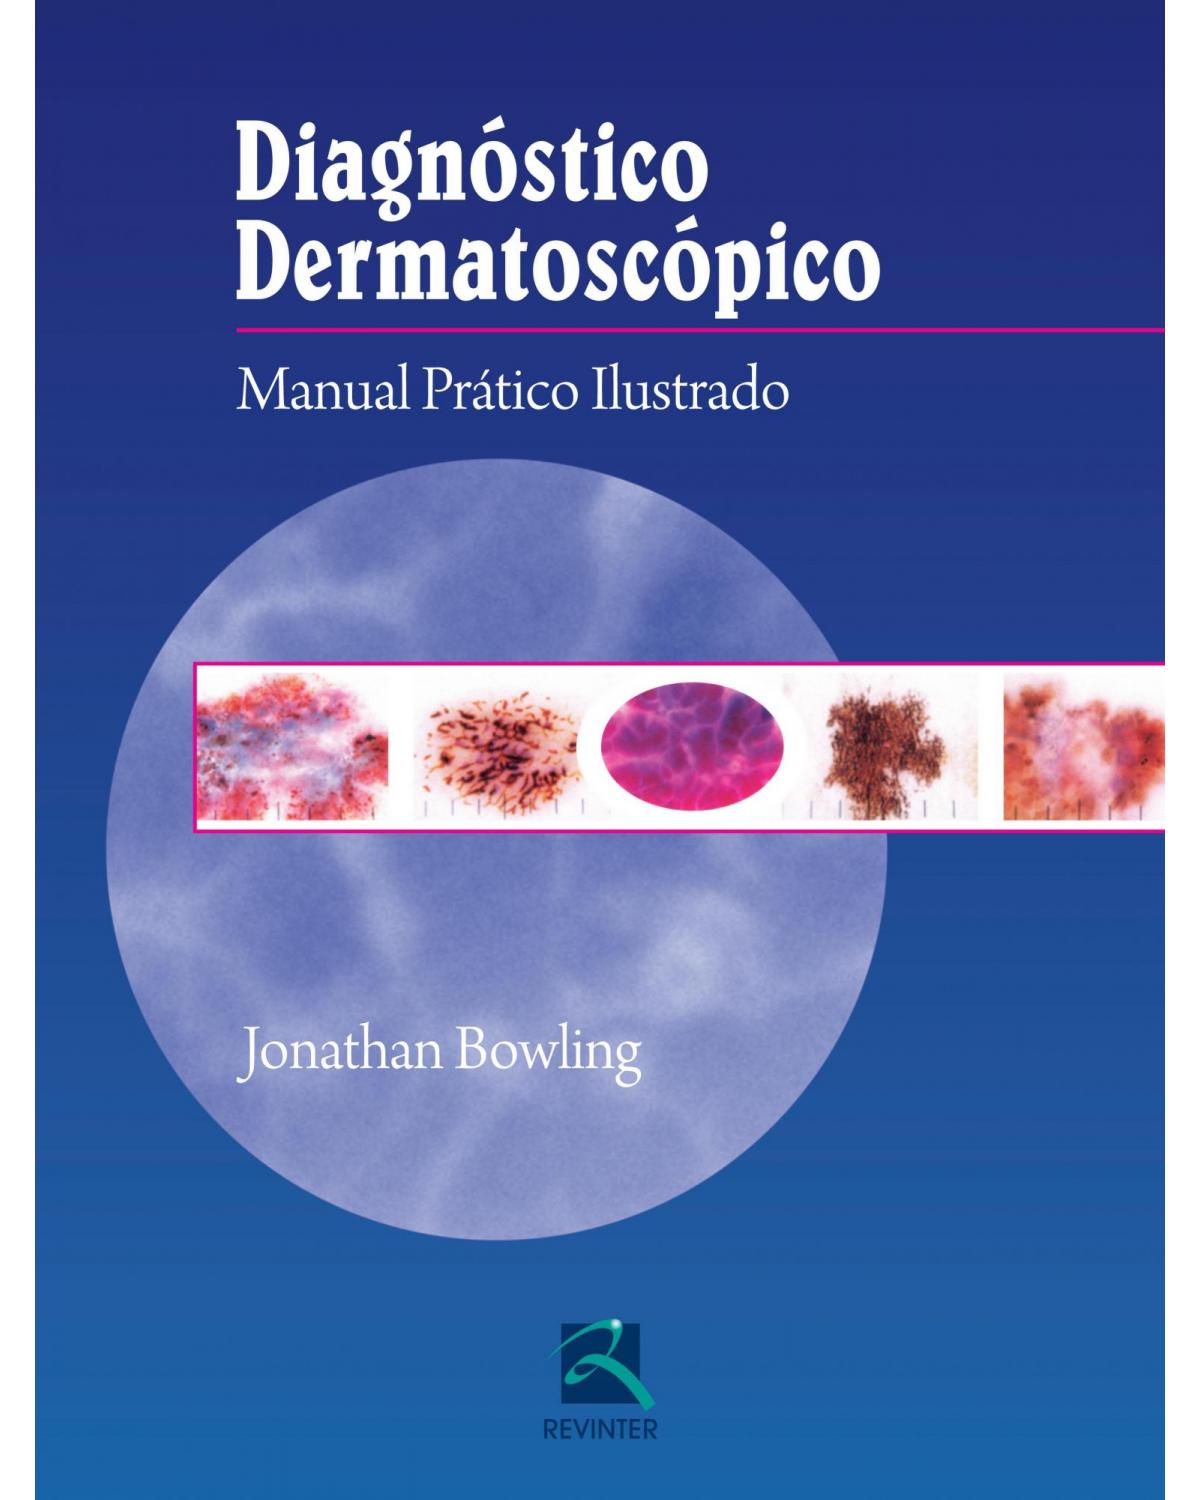 Diagnóstico dermatoscópico - manual prático ilustrado - 1ª Edição | 2014